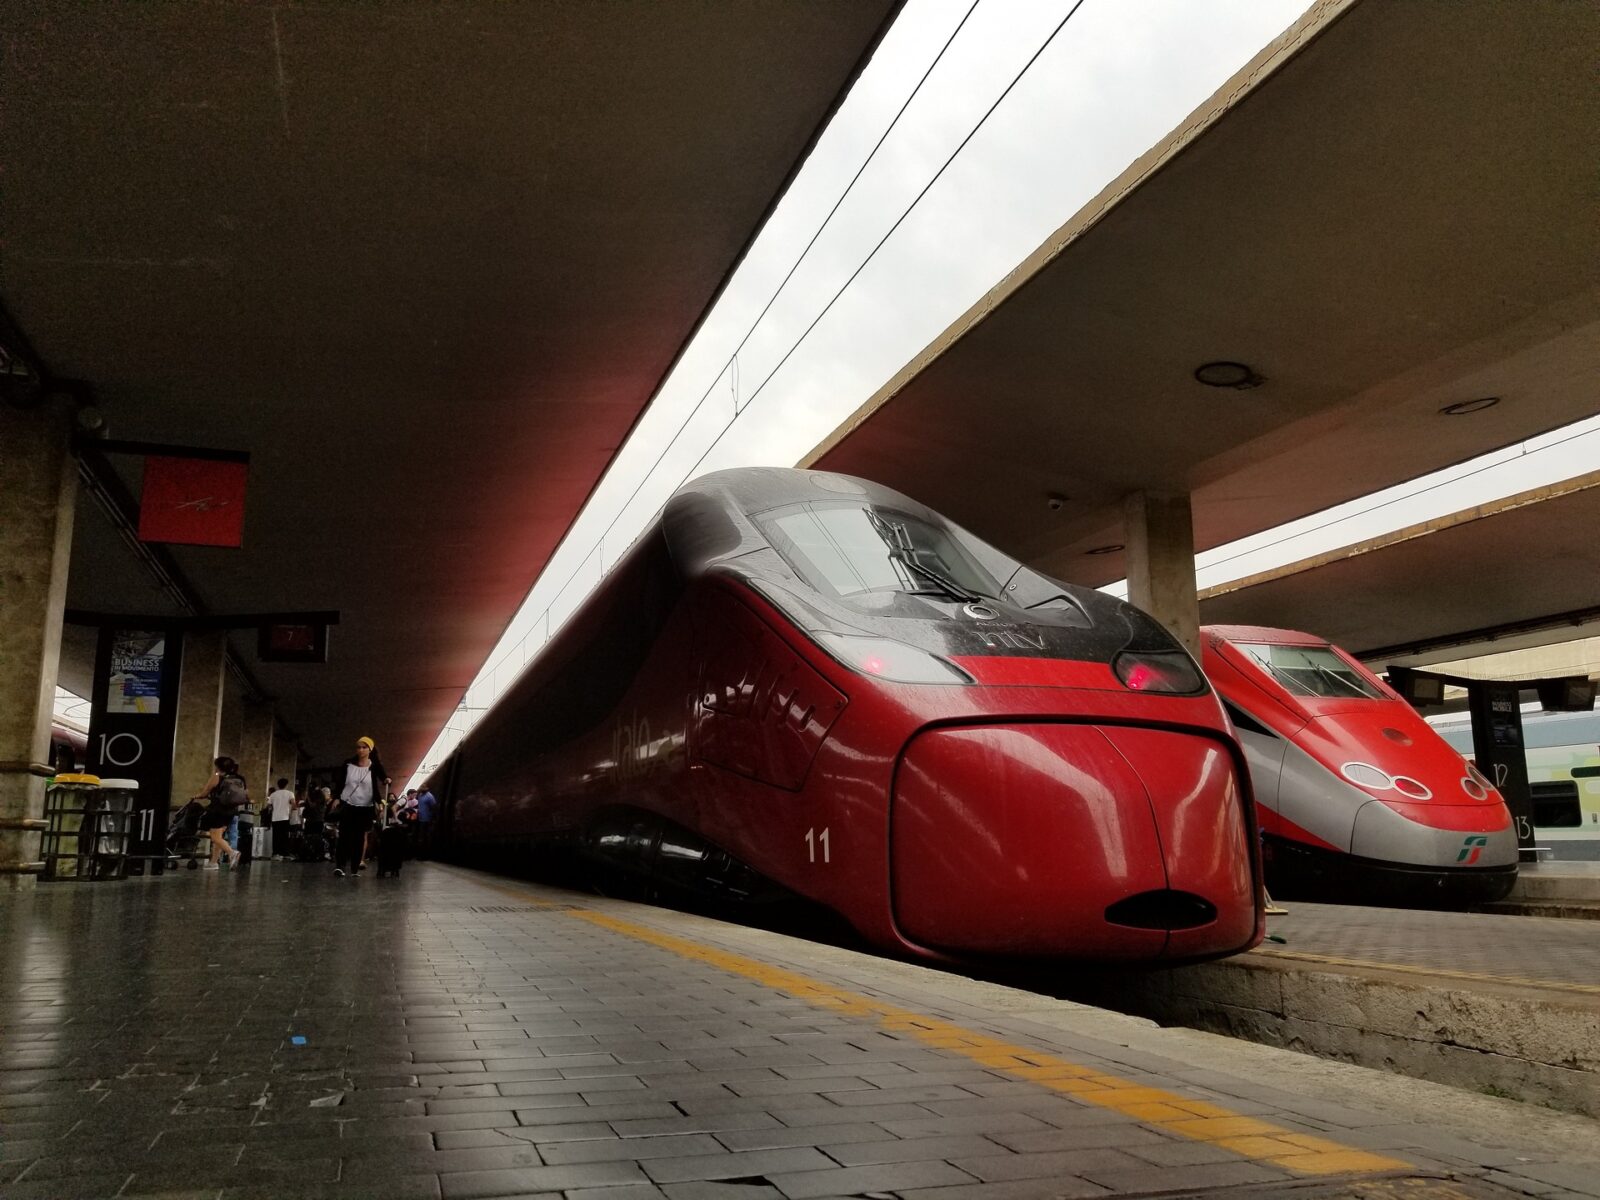 transito tramite treni sul territorio italiano